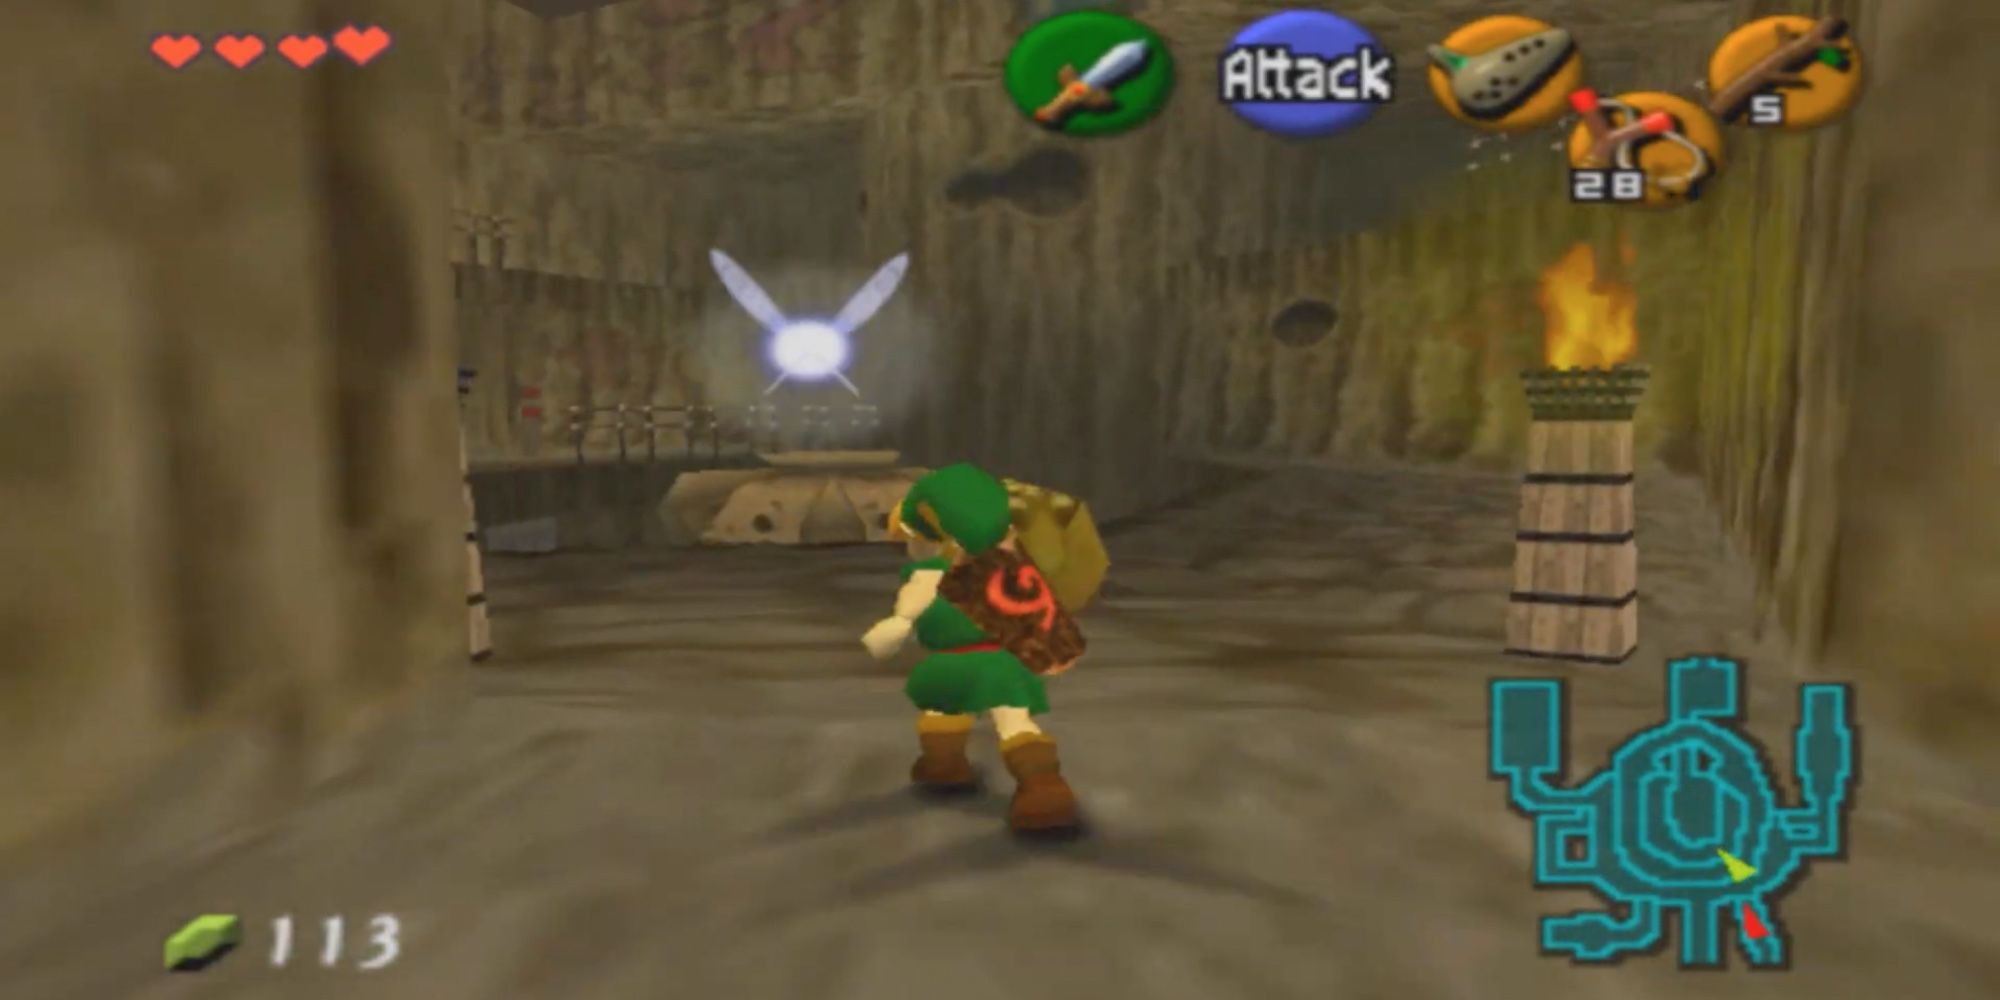 Legend of Zelda - Ocarina of Time - Link running through Hyrule